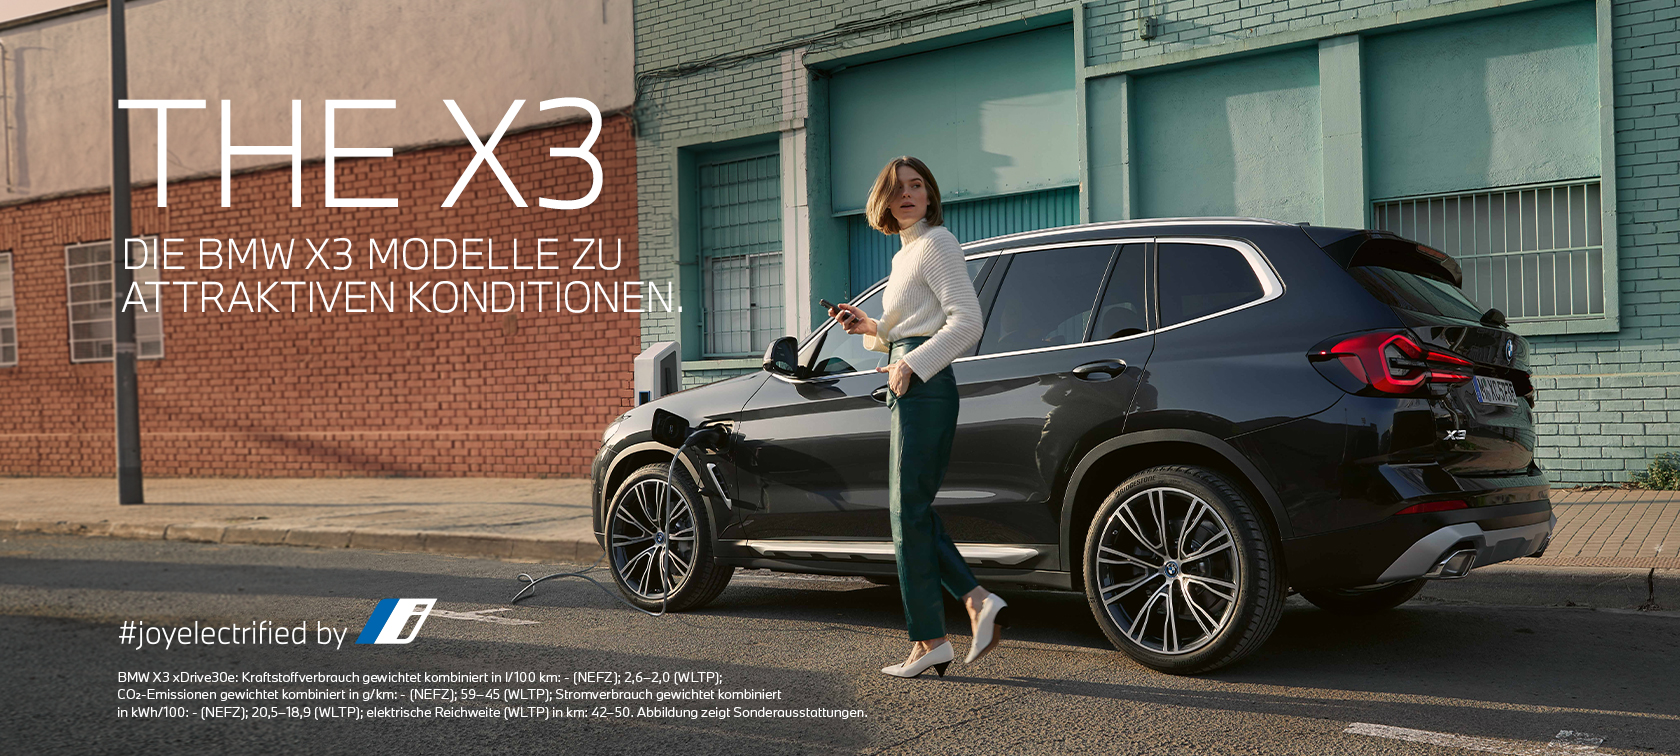 BMW X3 - Modelle zu attraktiven Konditionen